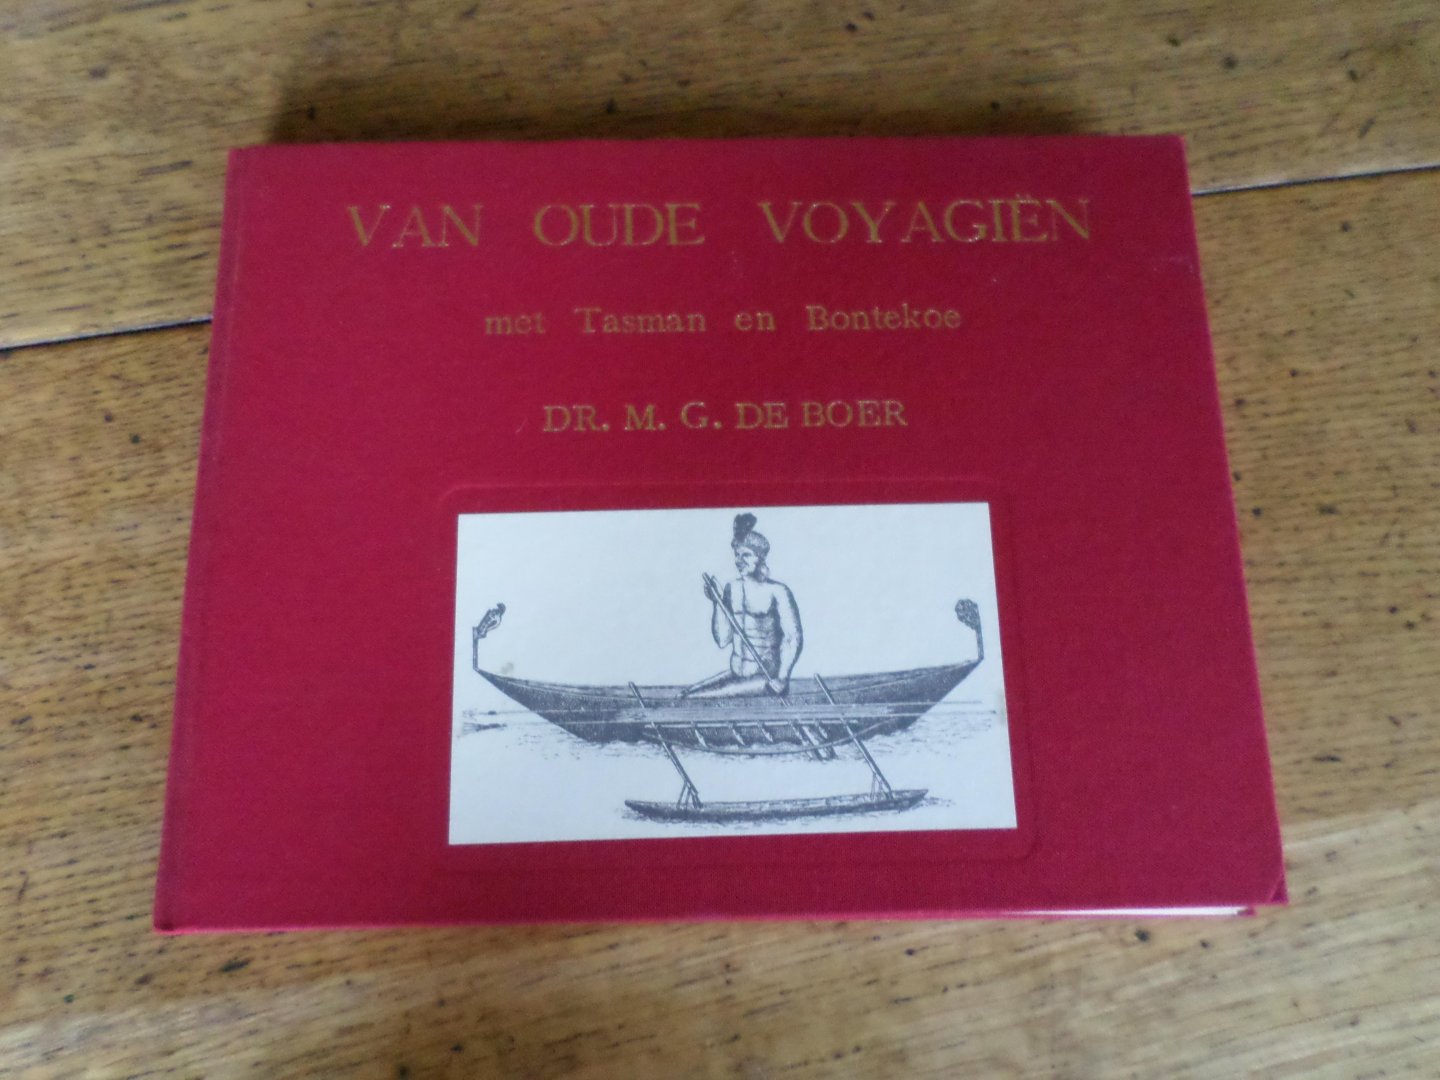 Boer, dr. M.G. de - Van oude voyagiën deel 3 met Tasman en Bontekoe